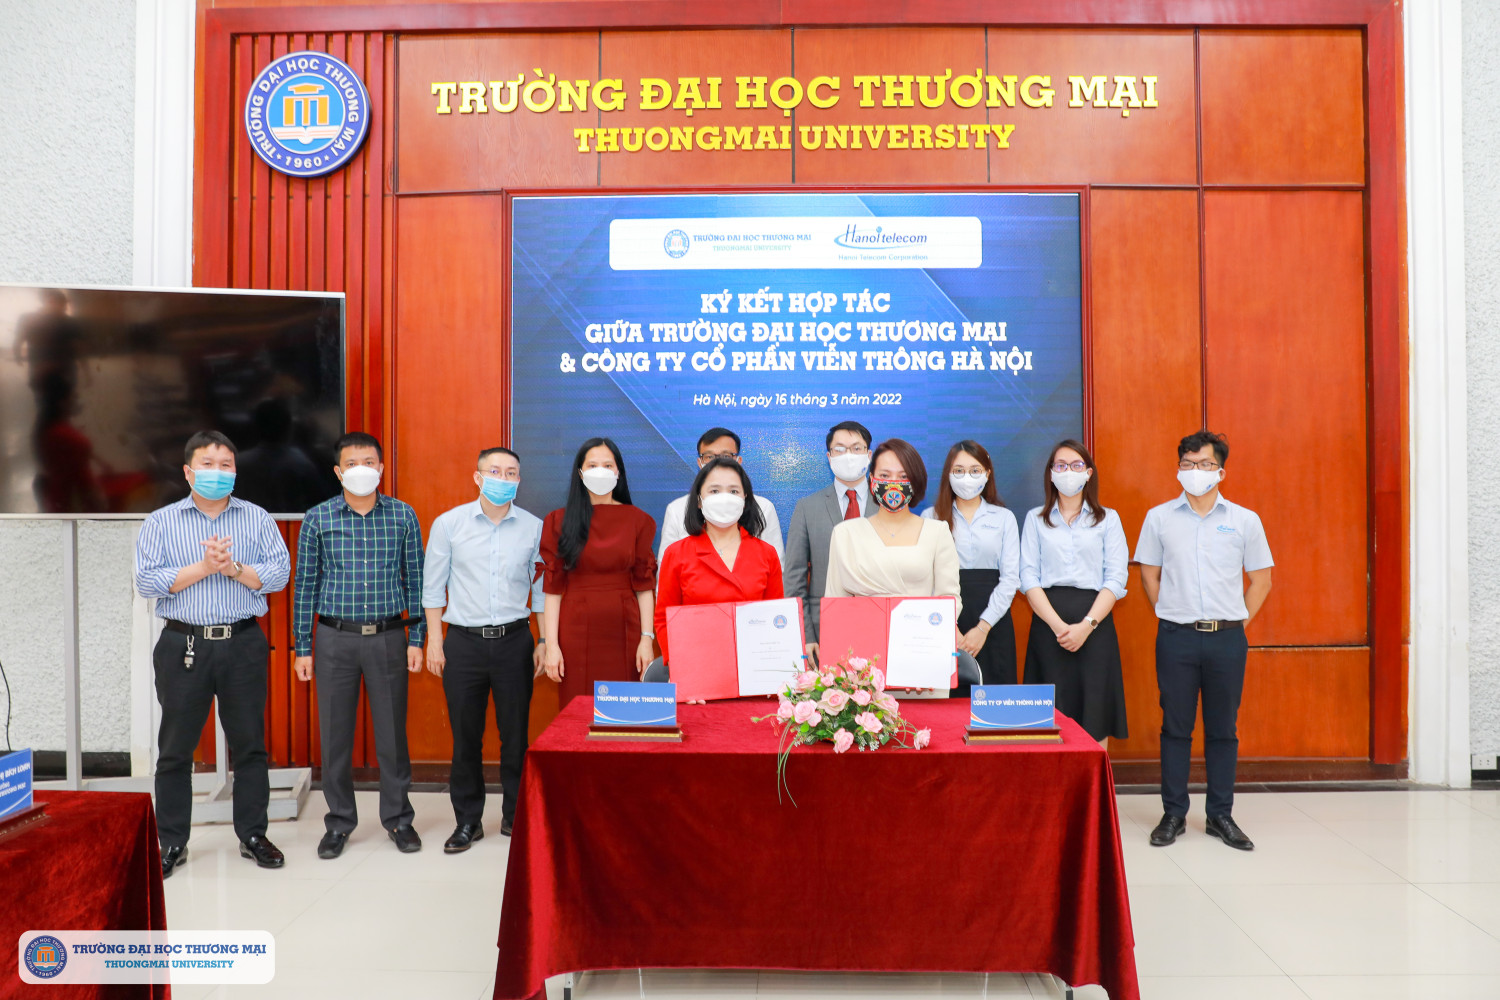 Lễ Ký kết thỏa thuận hợp tác giữa Trường Đại học Thương mại và Công ty cổ phần Viễn thông Hà Nội – Hanoi Telecom